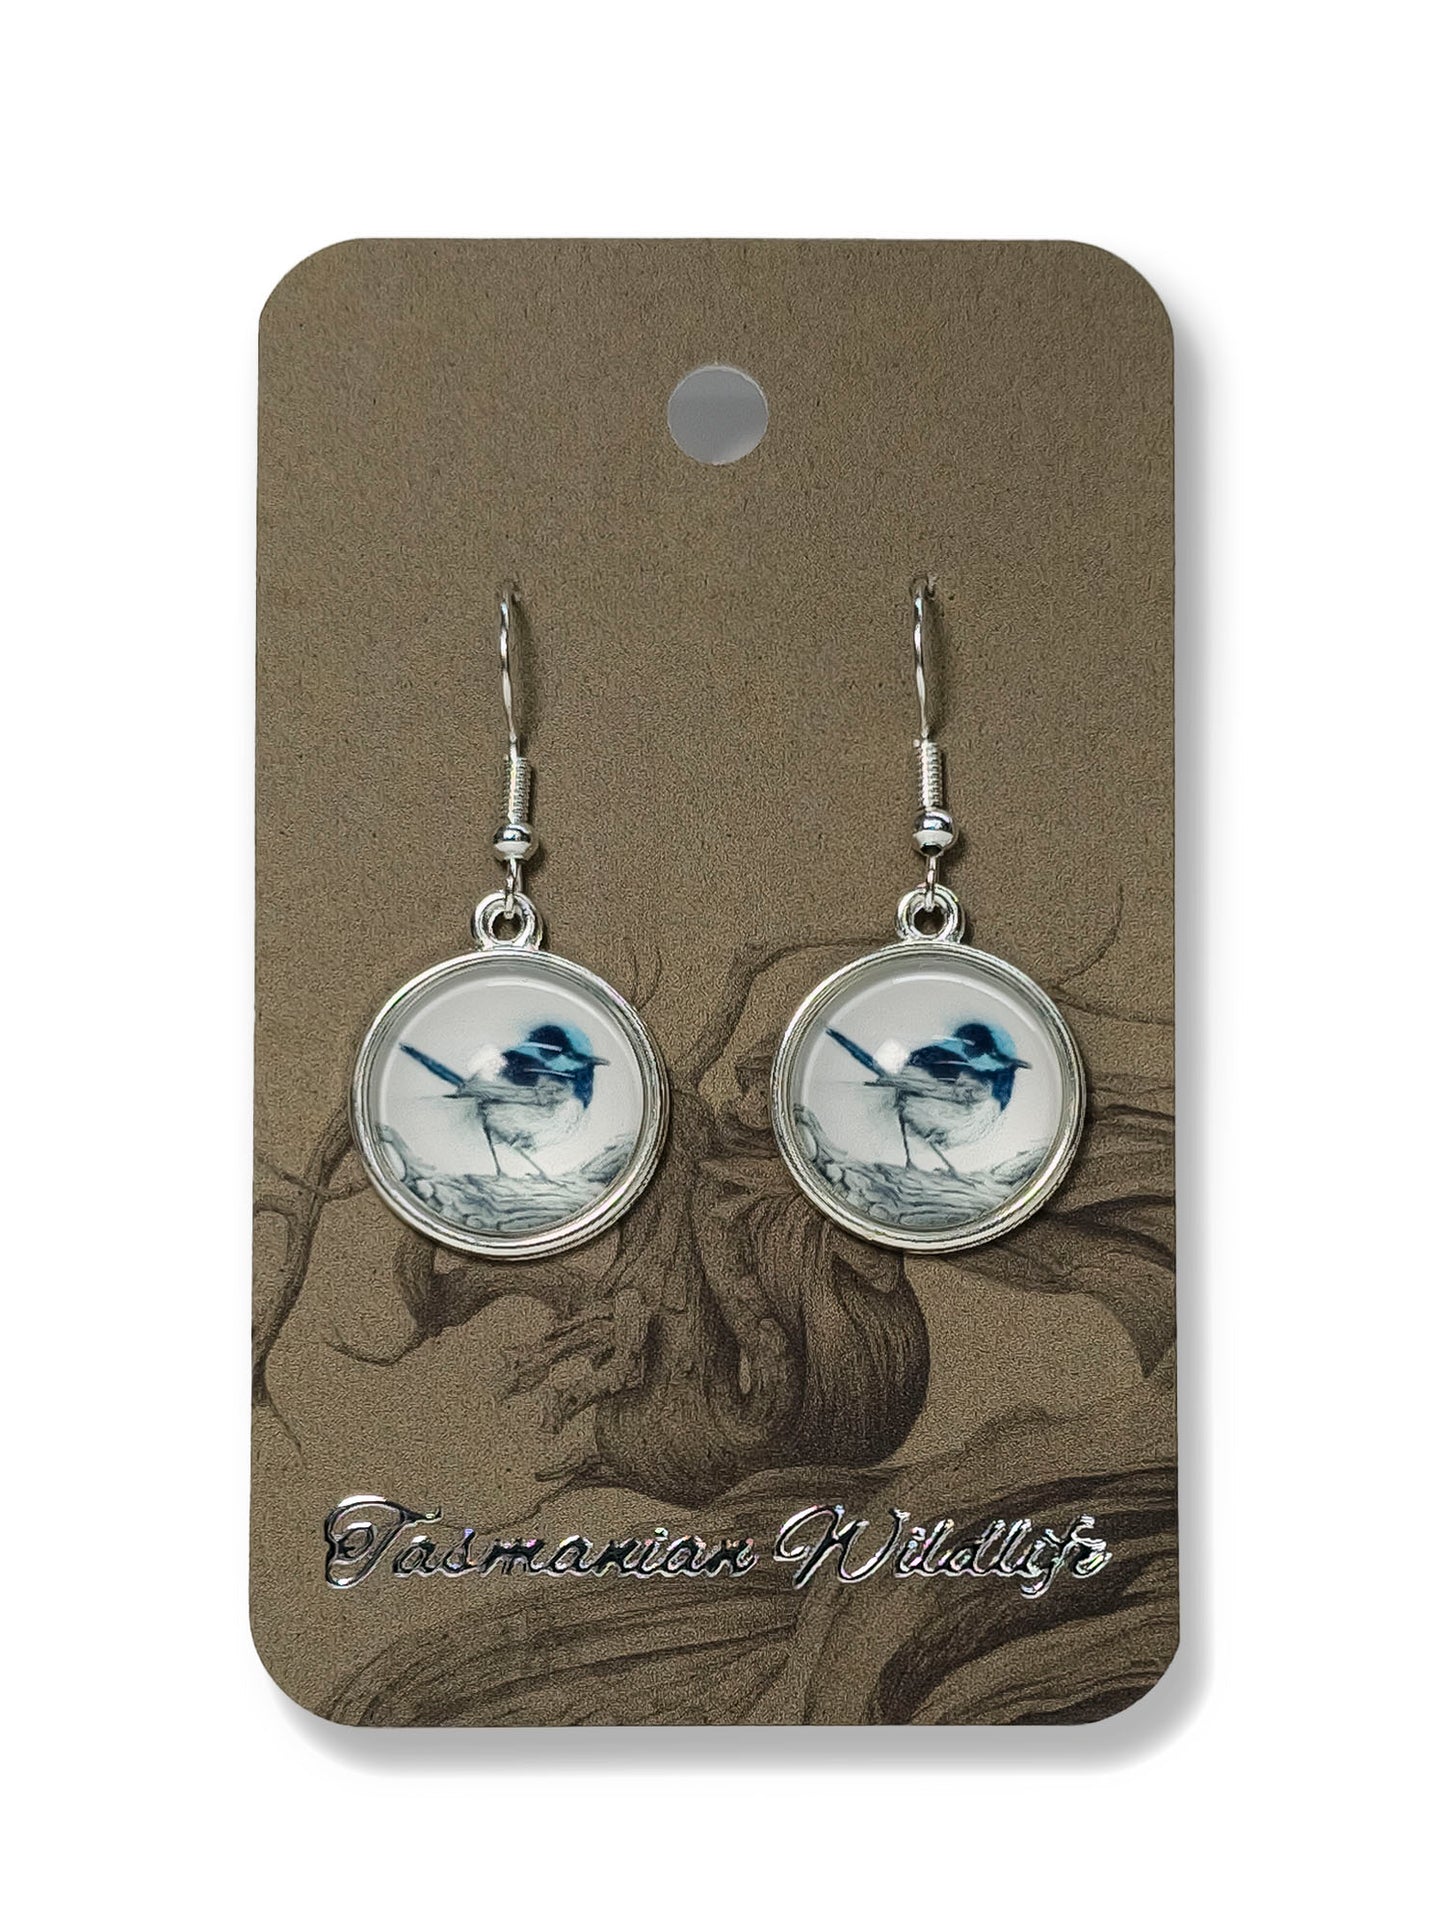 Fairy Wren glass cabochon earrings